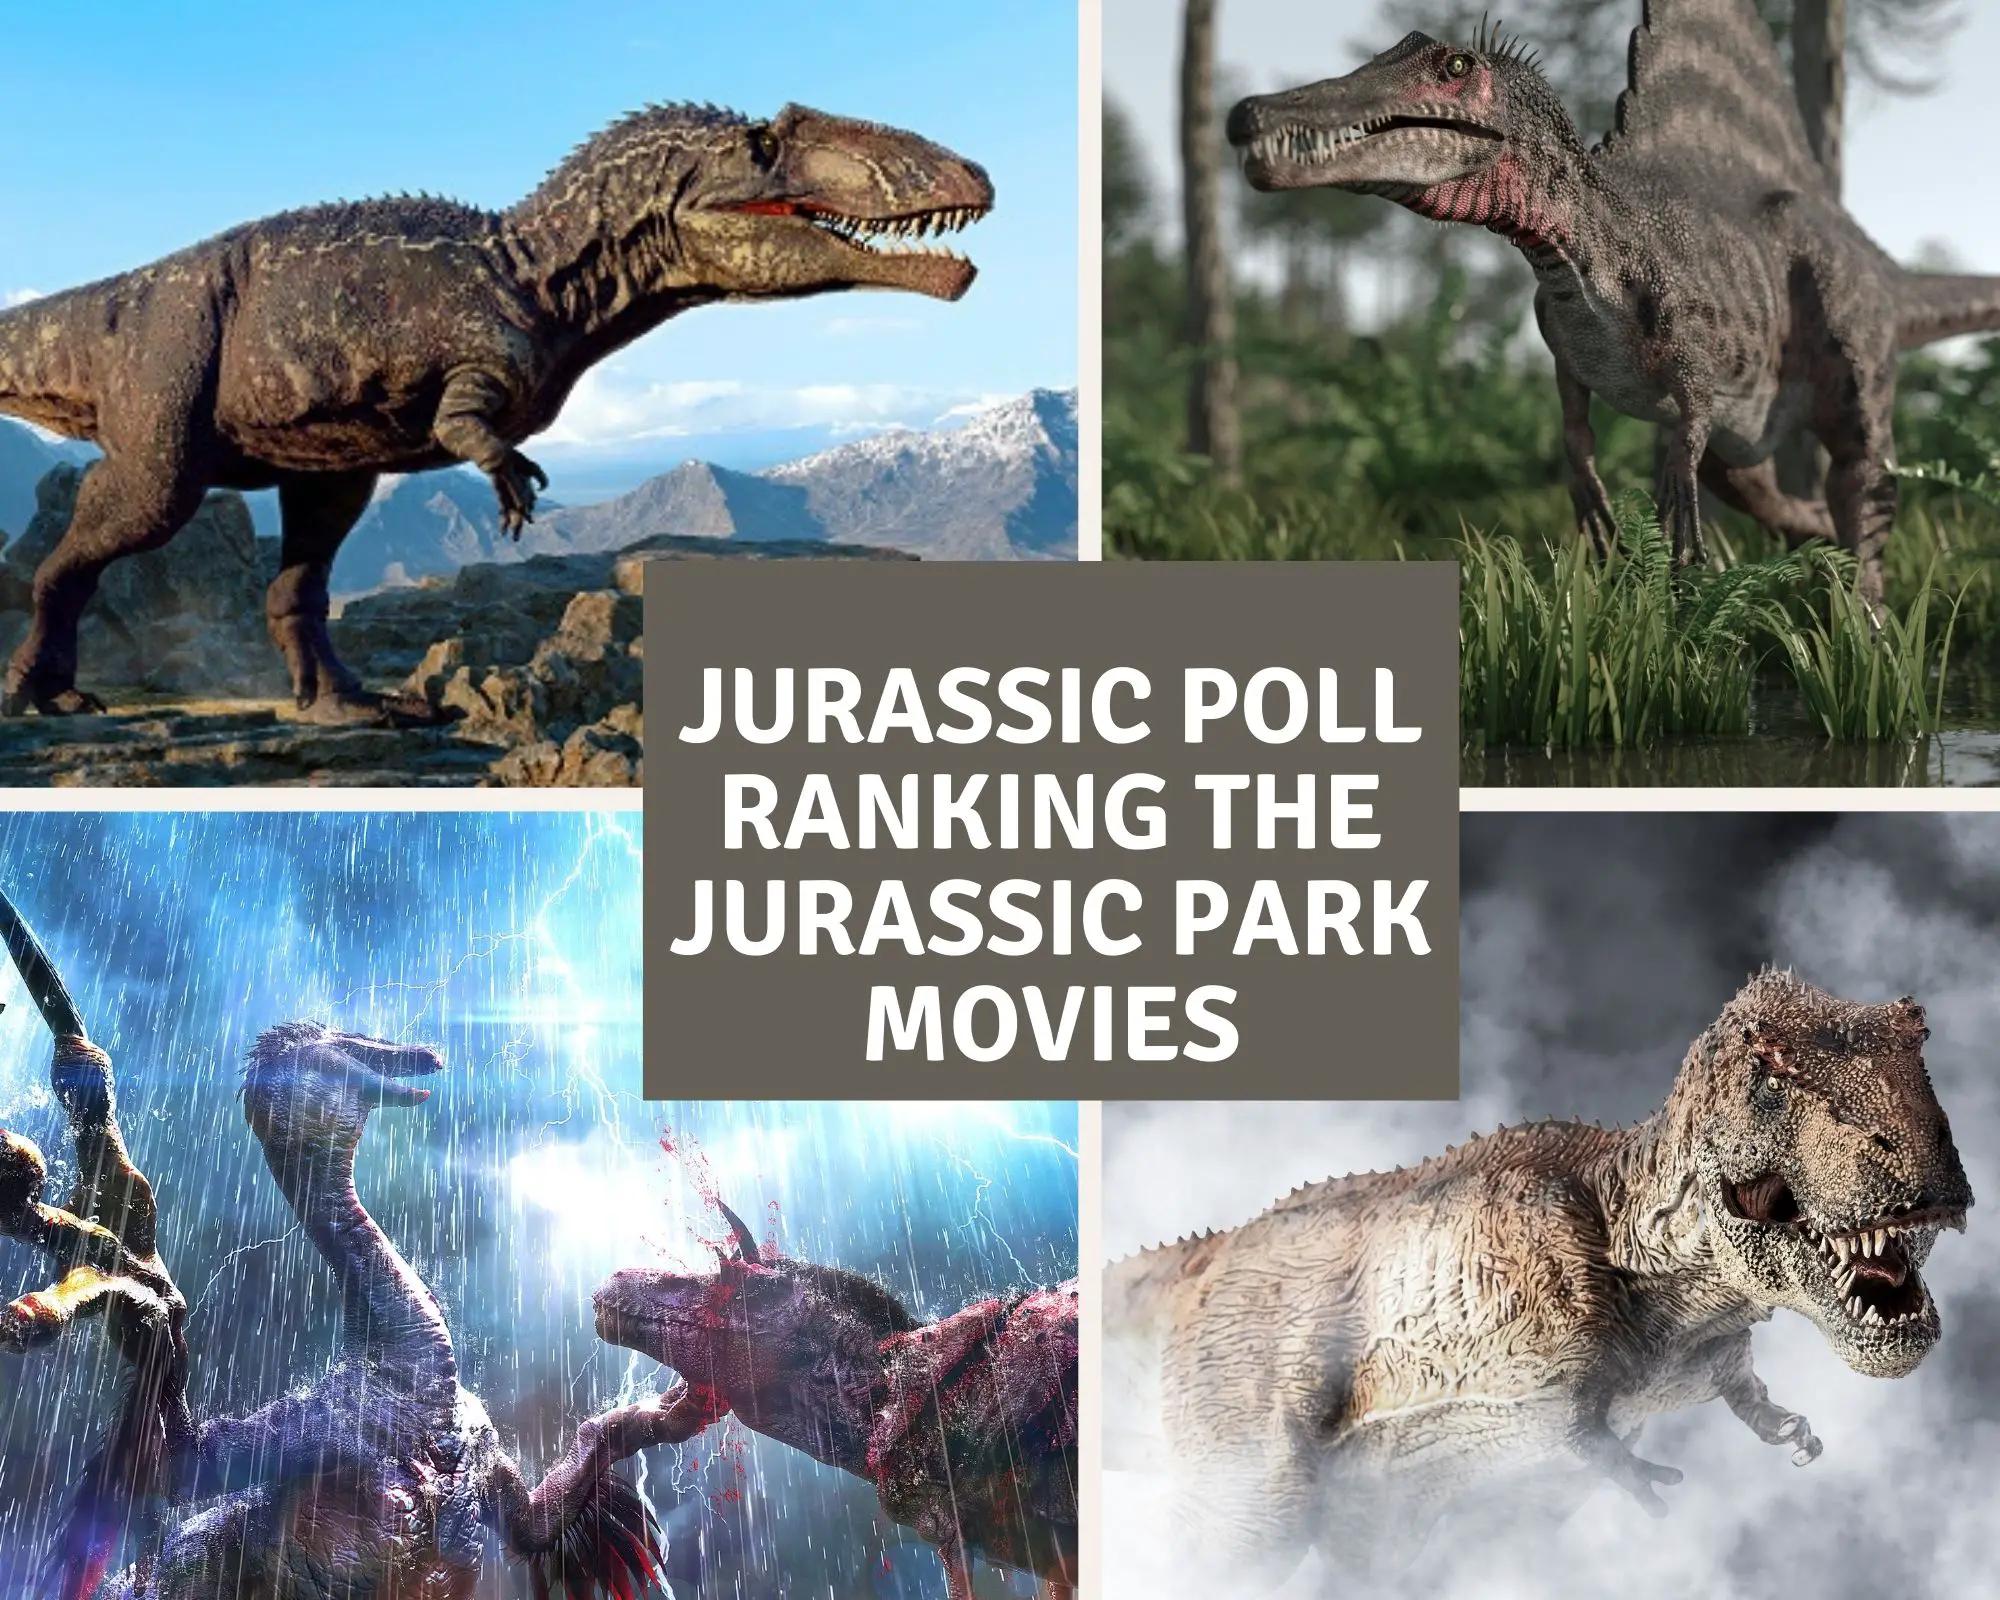 Jurassic Poll - ranking the Jurassic Park movies